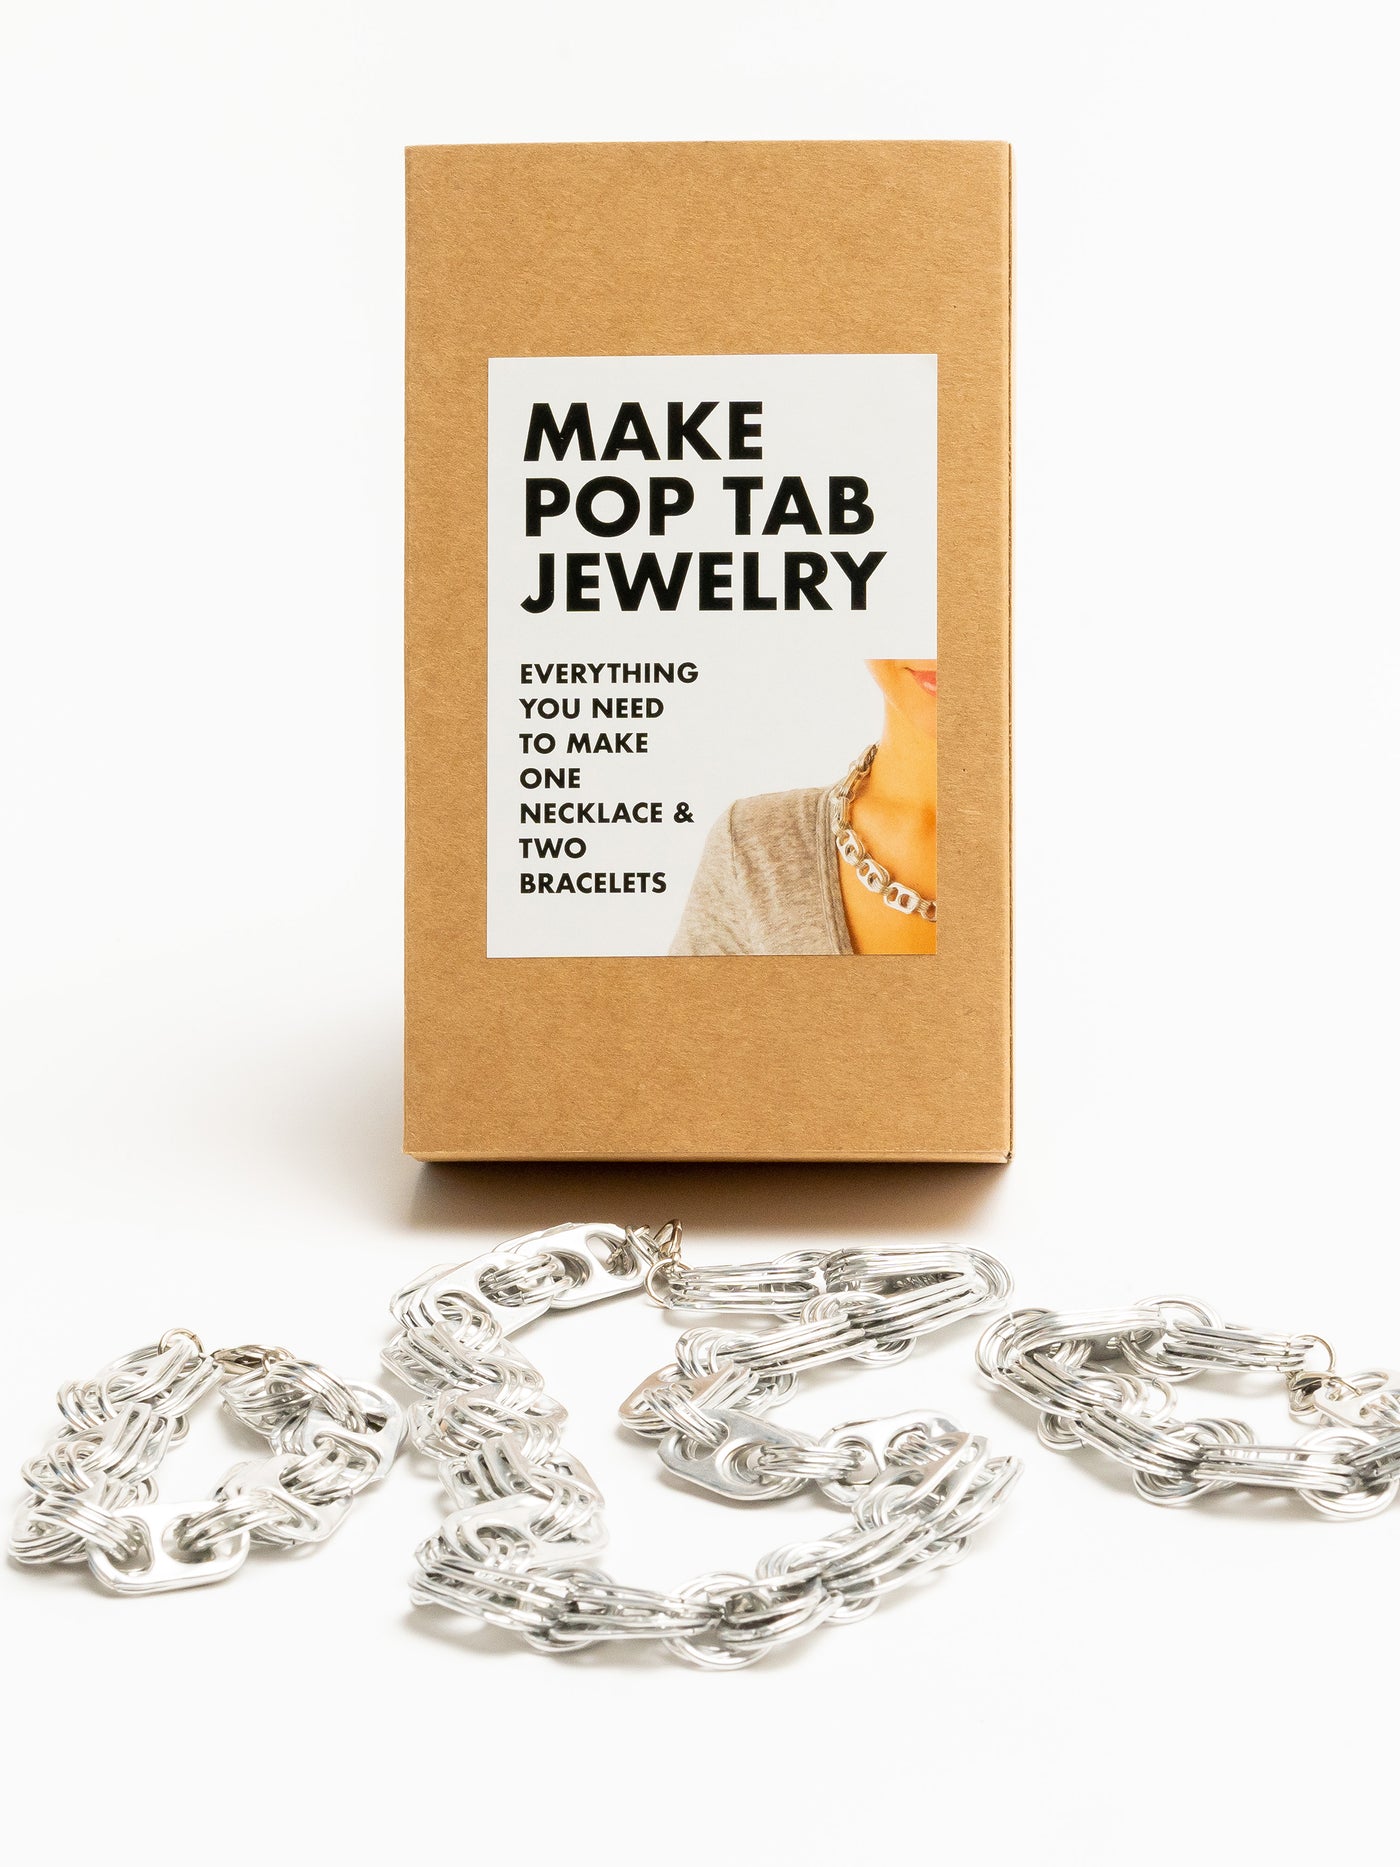 alt="soda pop tab jewelry kit - make pop tab jewelry escama studio"